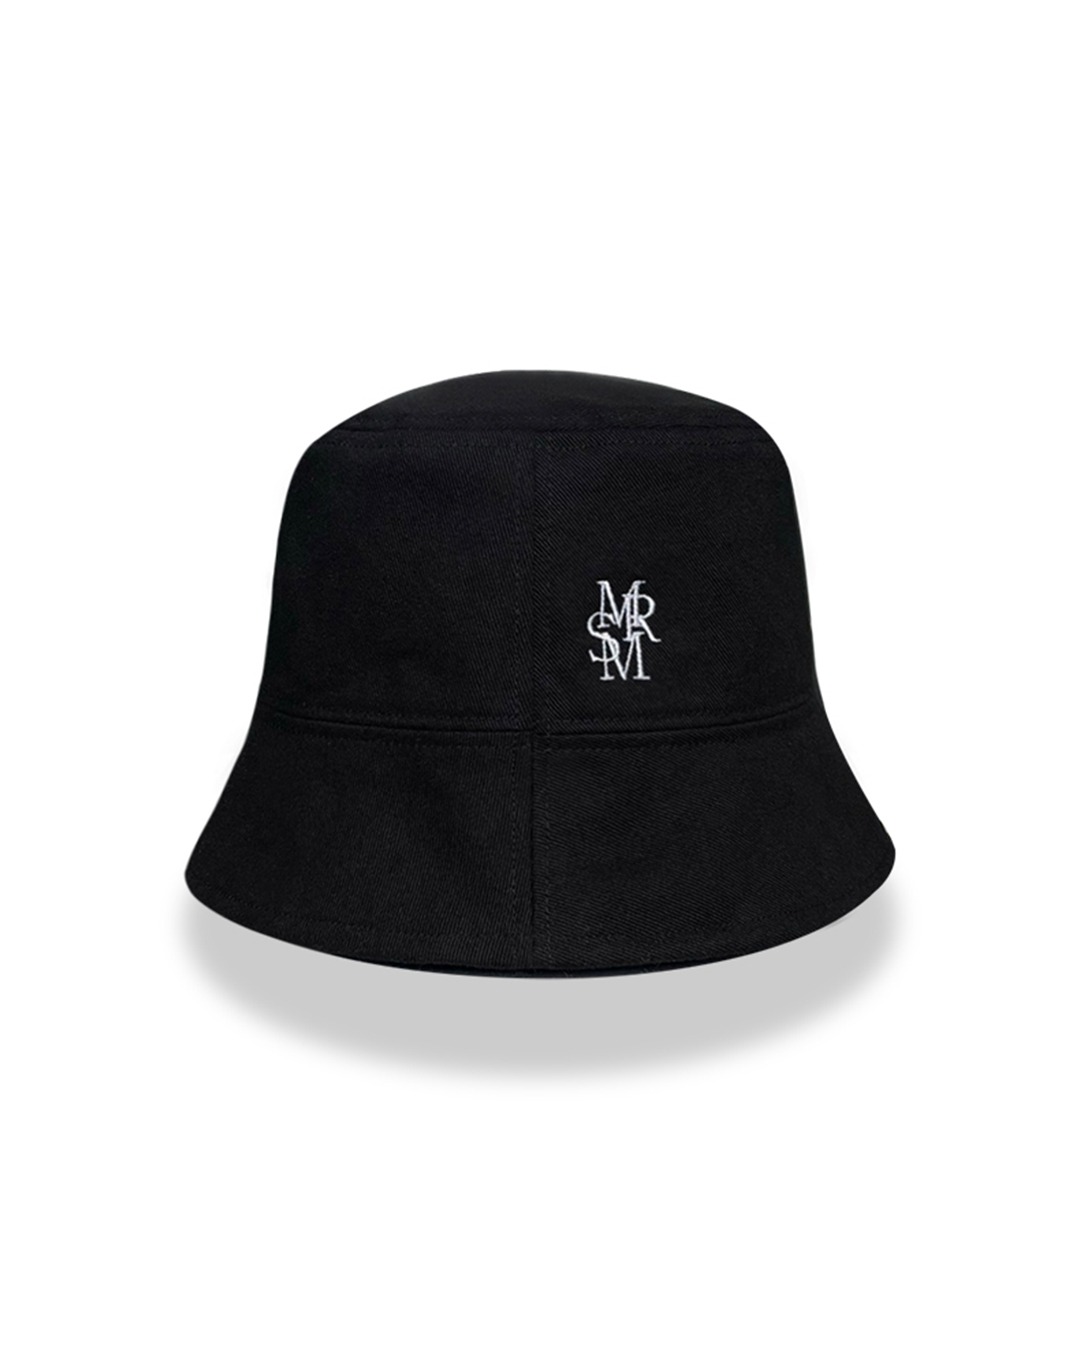 Marie Logo Black Bucket Hat